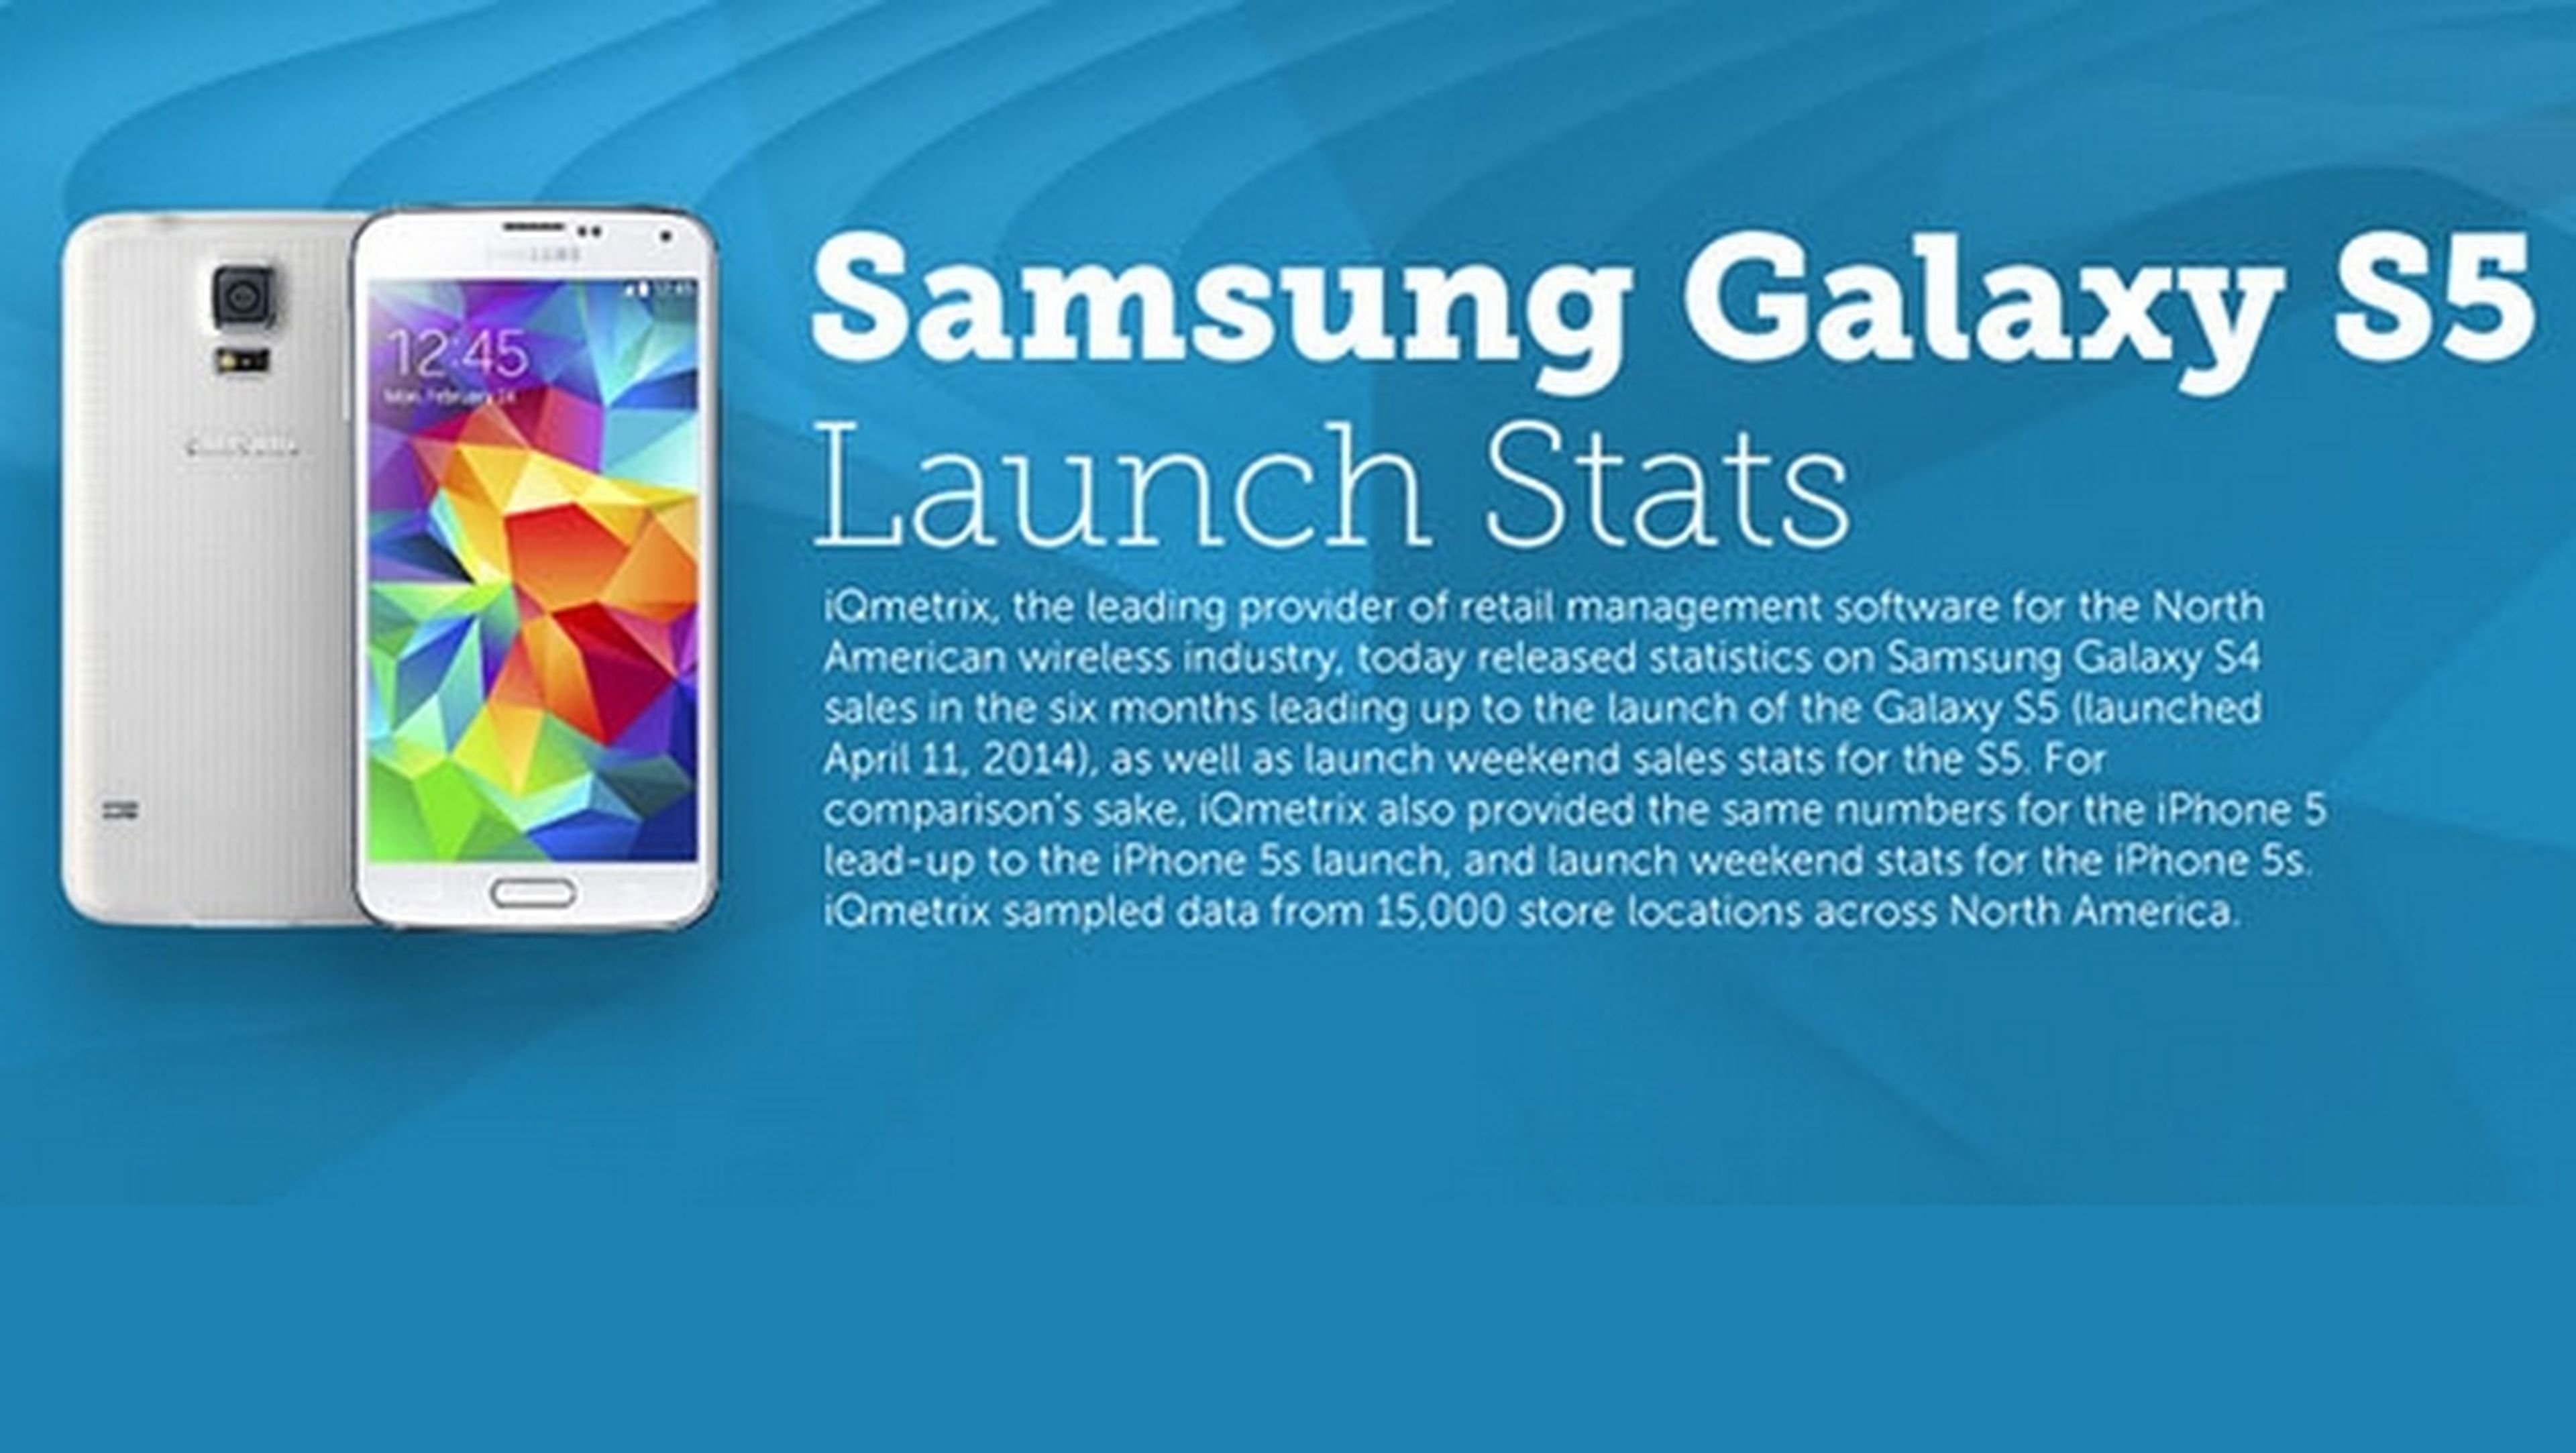 Las ventas del Samsung Galaxy S5 superaron a las del iPhone 5S durante el primer fin de semana, según iQmetrix